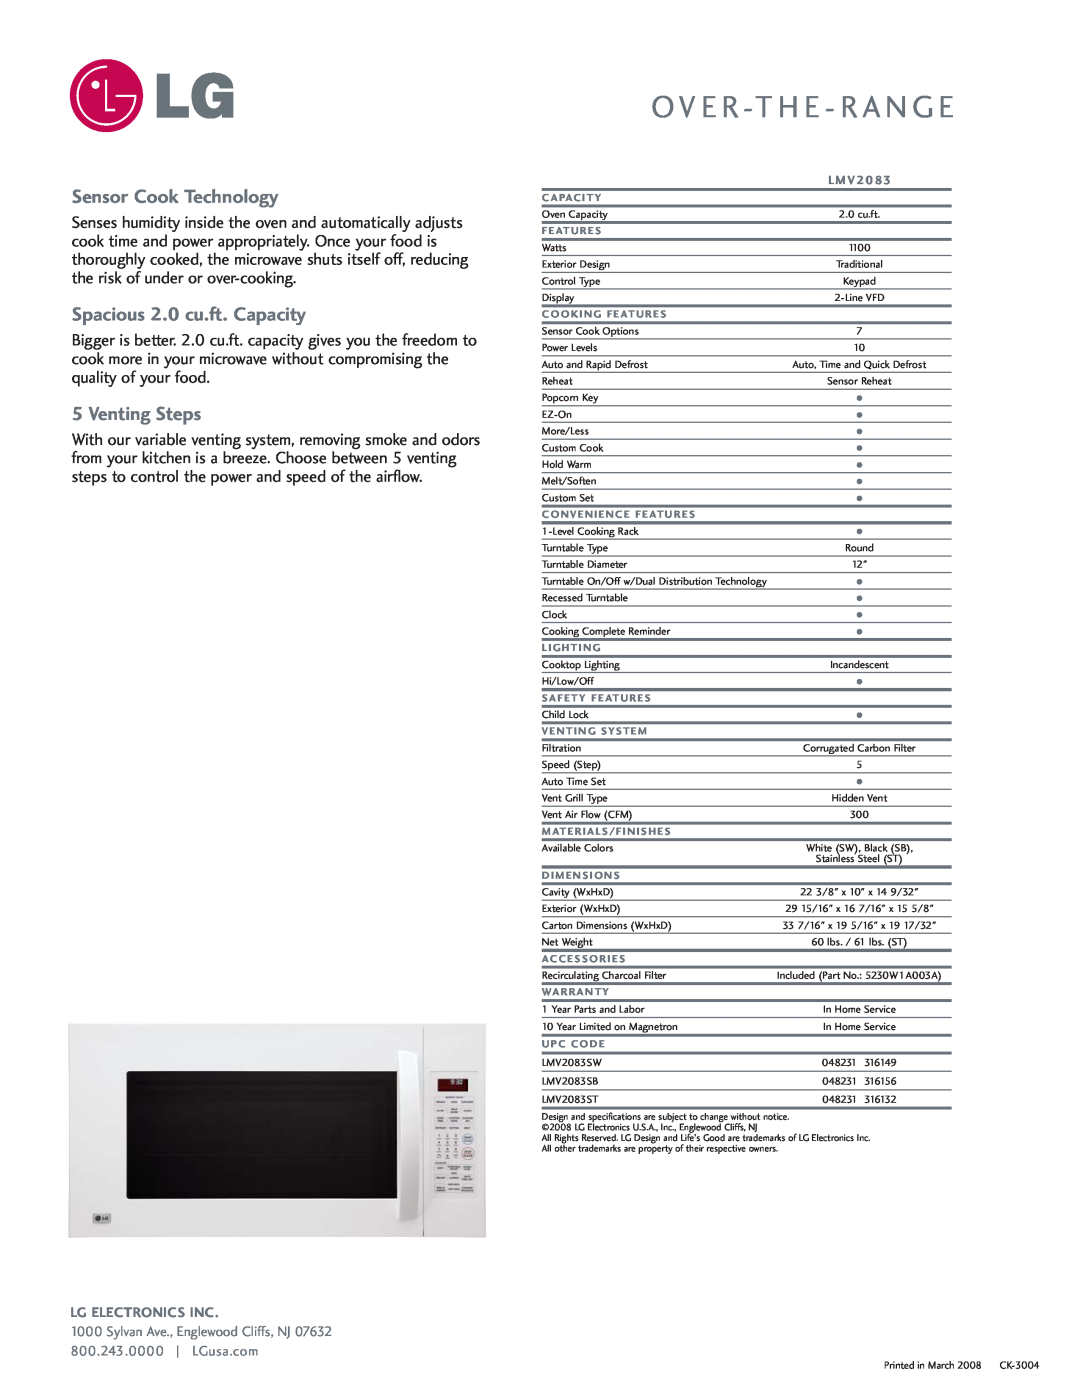 LG Electronics LMV2083 Sensor Cook Technology, Spacious 2.0 cu.ft. Capacity, Venting Steps, O V E R -Th E - R A N G E 